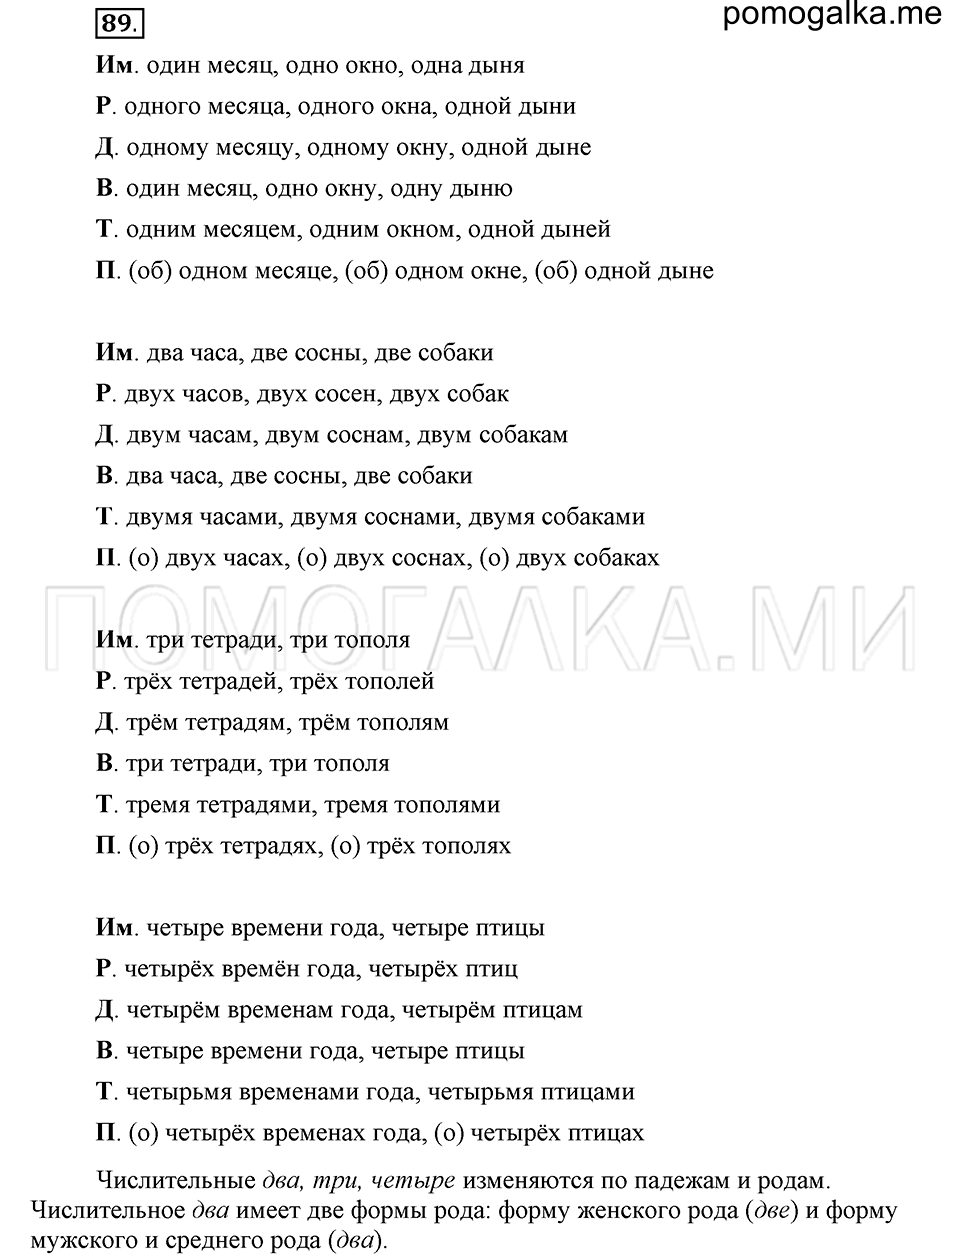 упражнение 89 русский язык 6 класс Быстрова, Кибирева 2 часть 2019 год